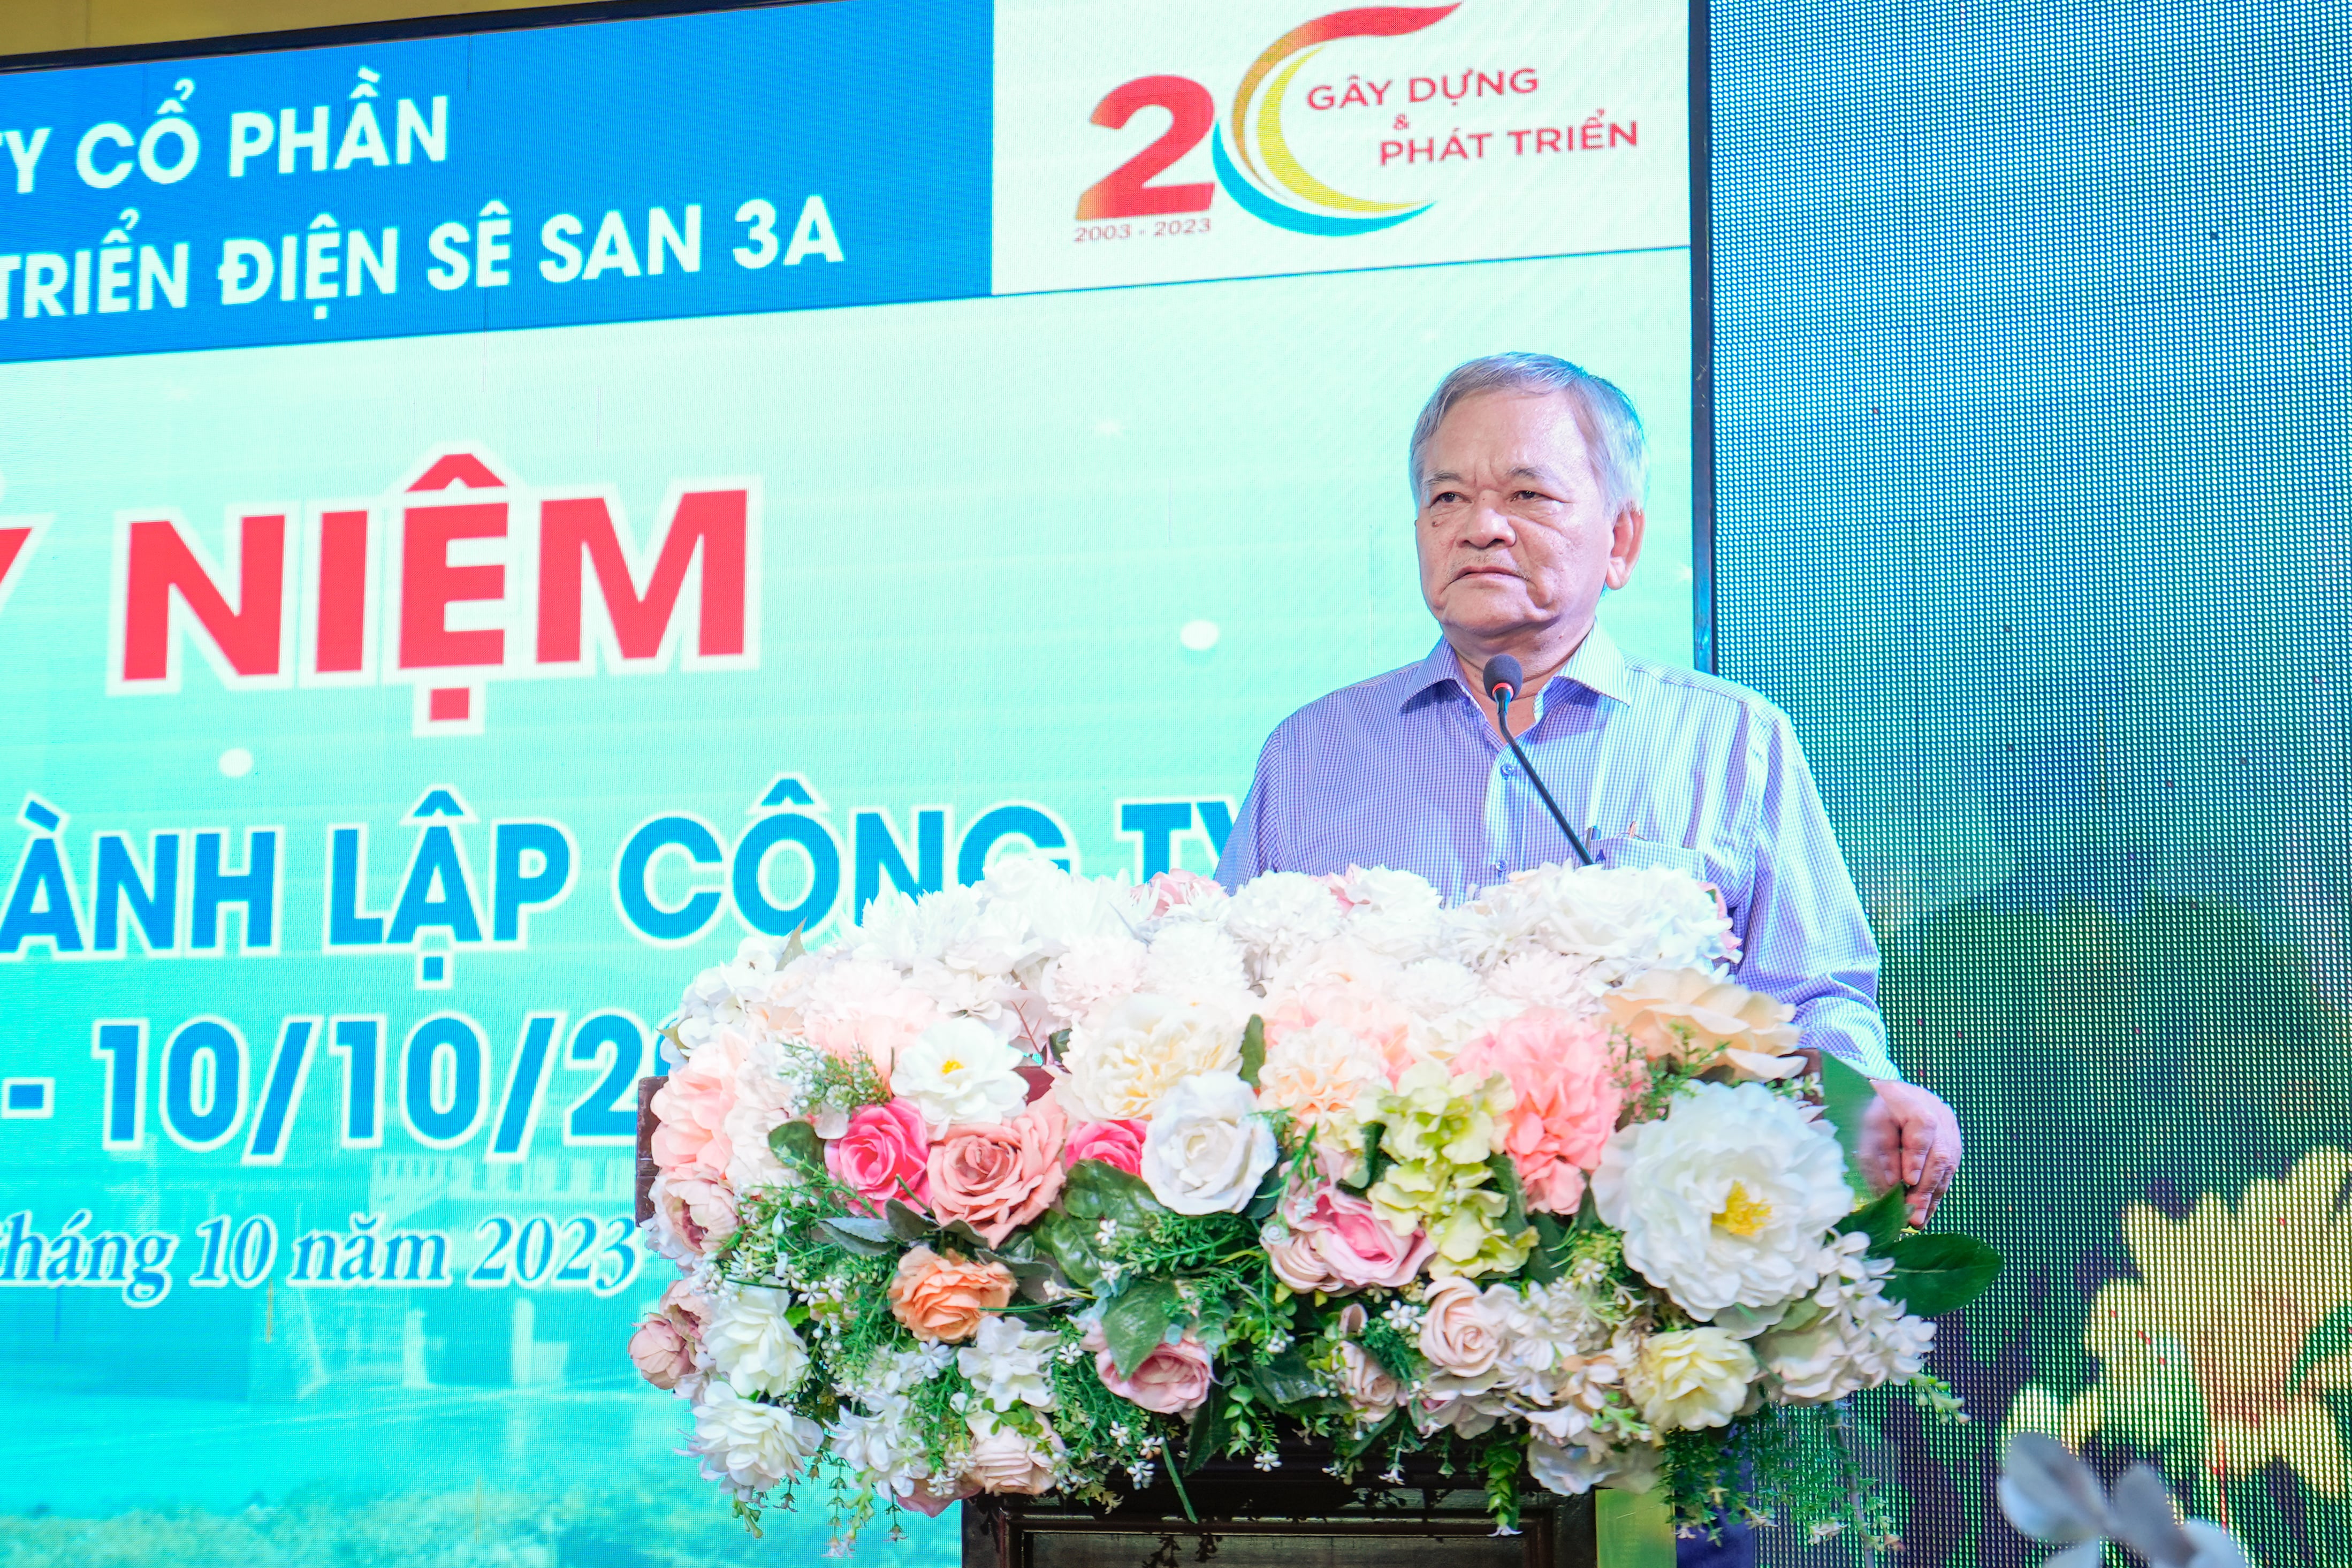 Ông Mai Huy Tuấn – Nguyên Chủ tịch Hội đồng quản trị Công ty xúc động phát biểu về những giai đoạn thăng trầm của Công ty